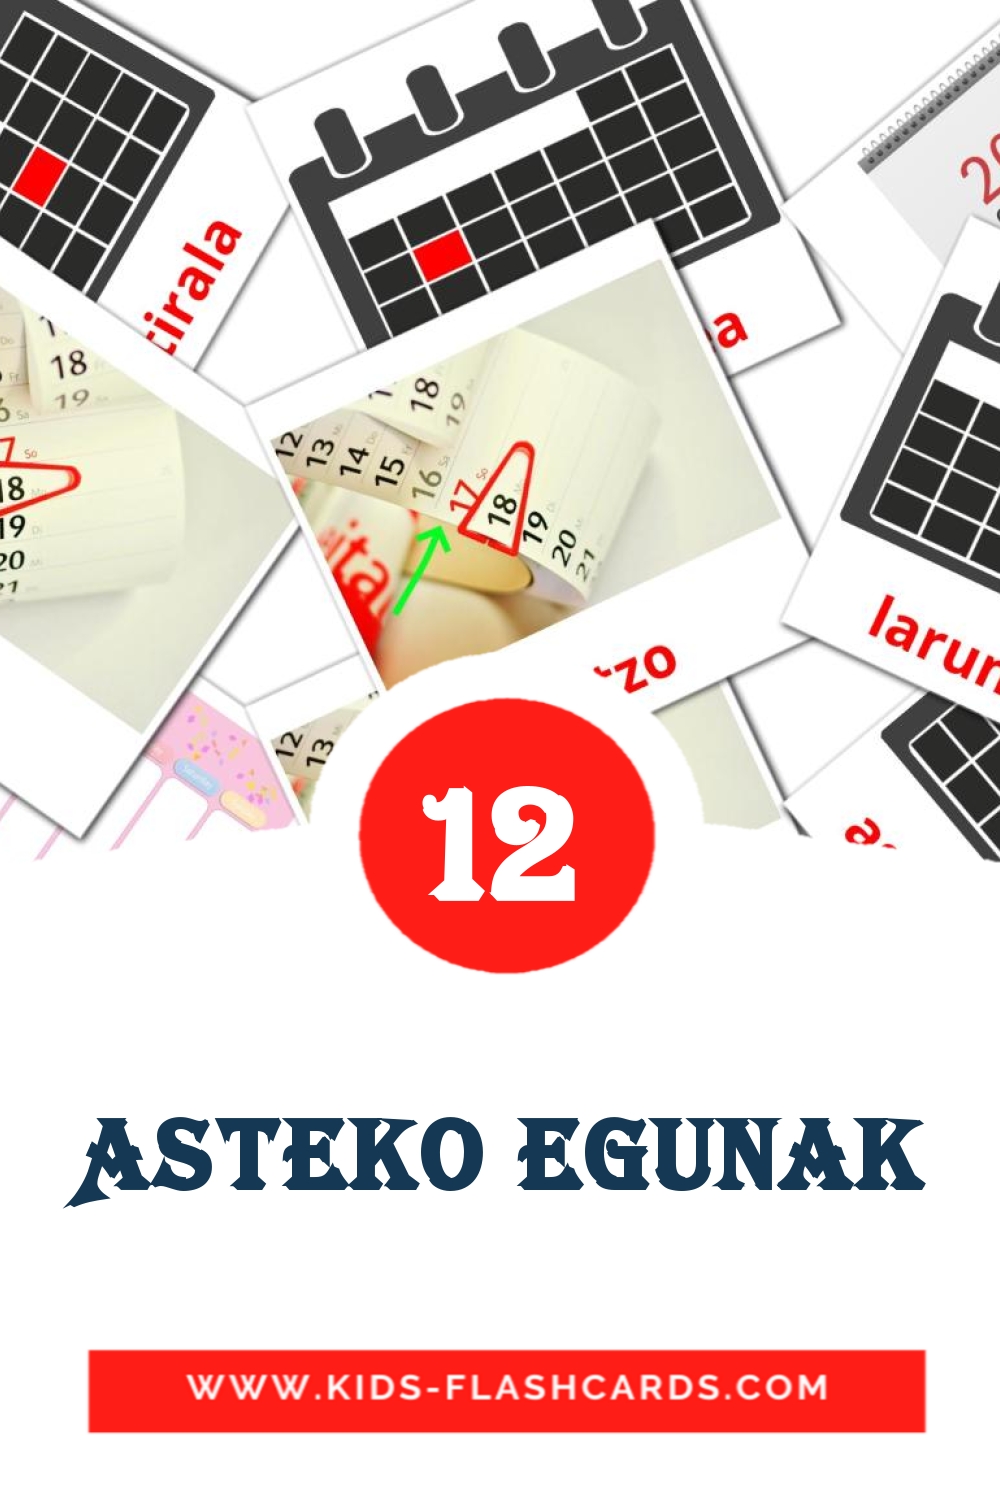 12 Asteko egunak Bildkarten für den Kindergarten auf Baskische